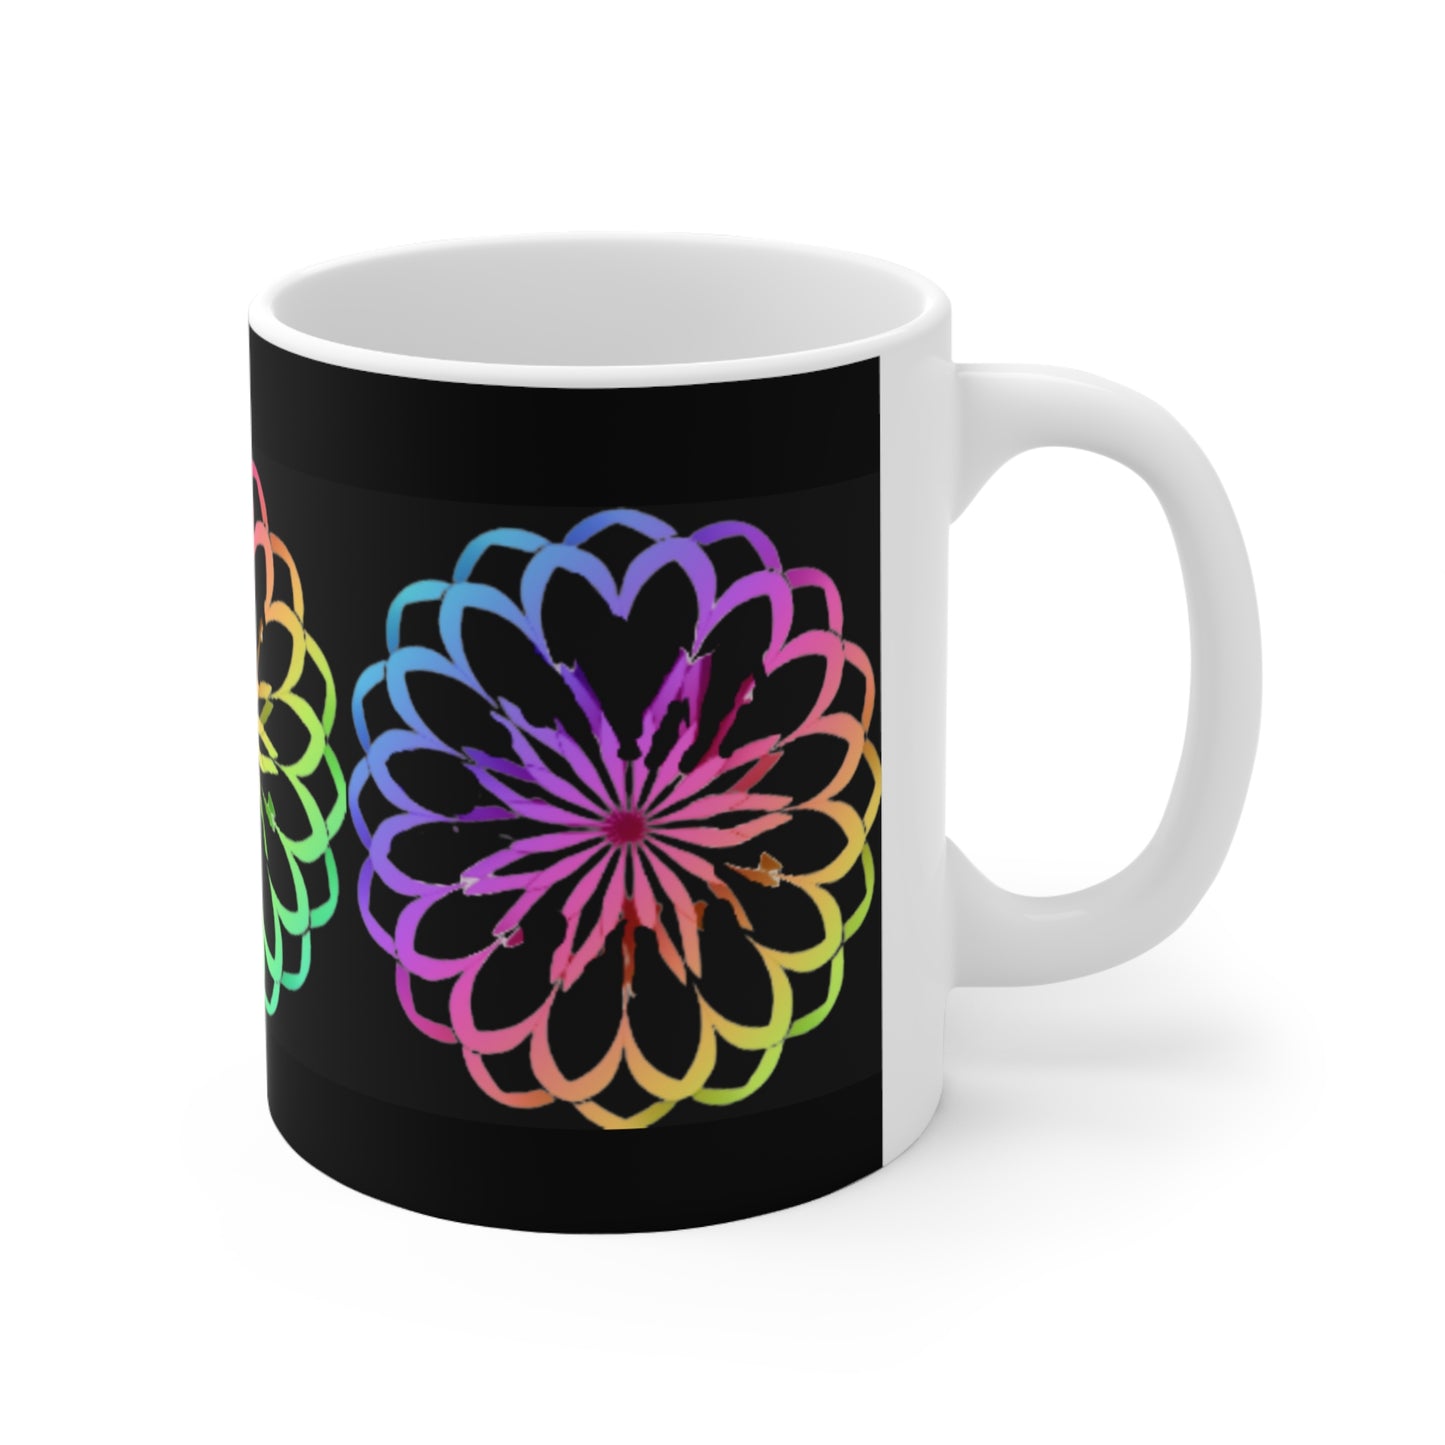 Rainbow Mandala on Black Background - Ceramic Mug 11oz